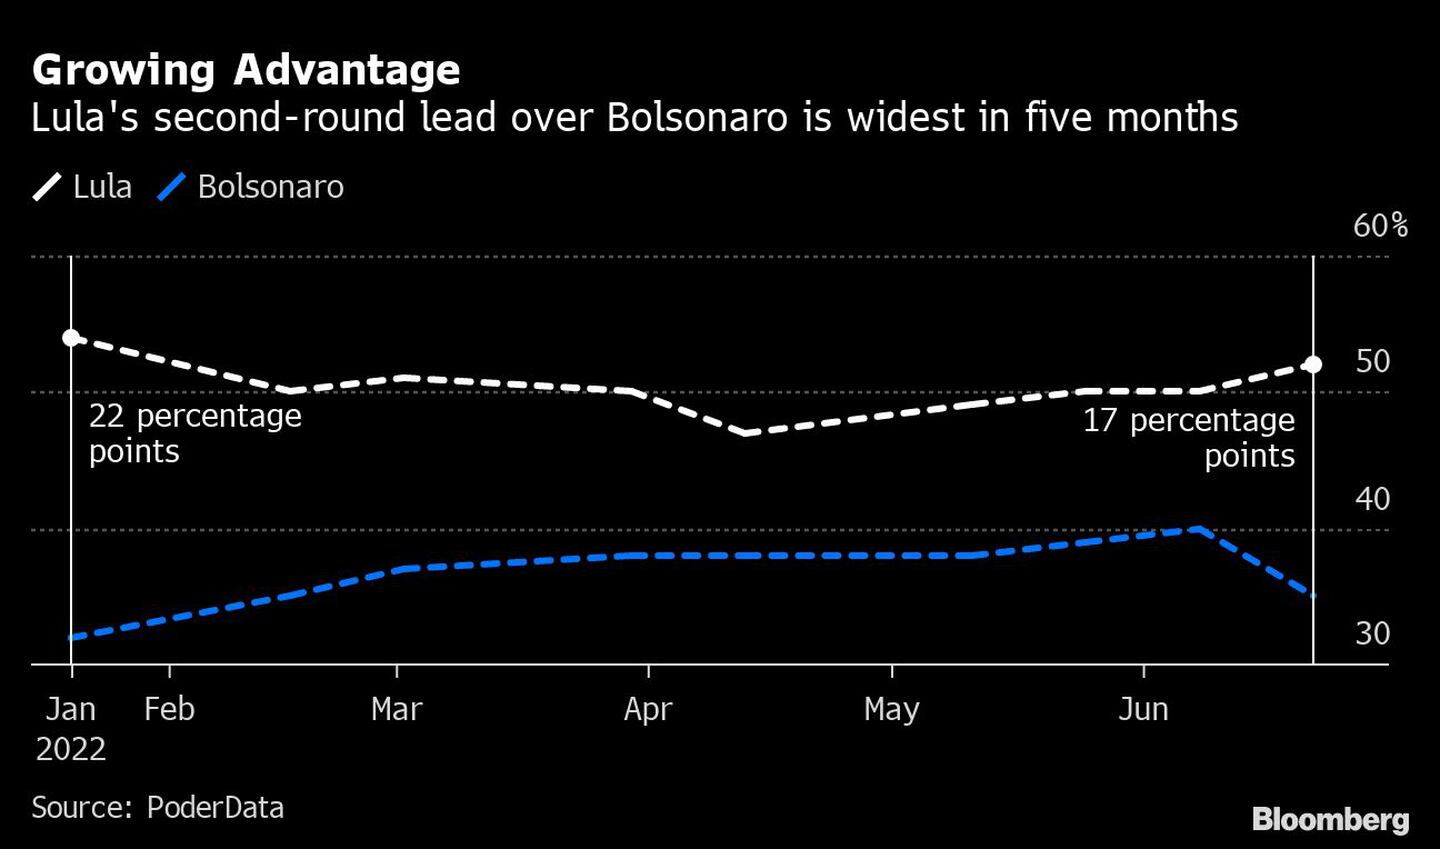 Ventaja creciente | La ventaja de Lula sobre Bolsonaro en la segunda vuelta es la más amplia en cinco mesesdfd